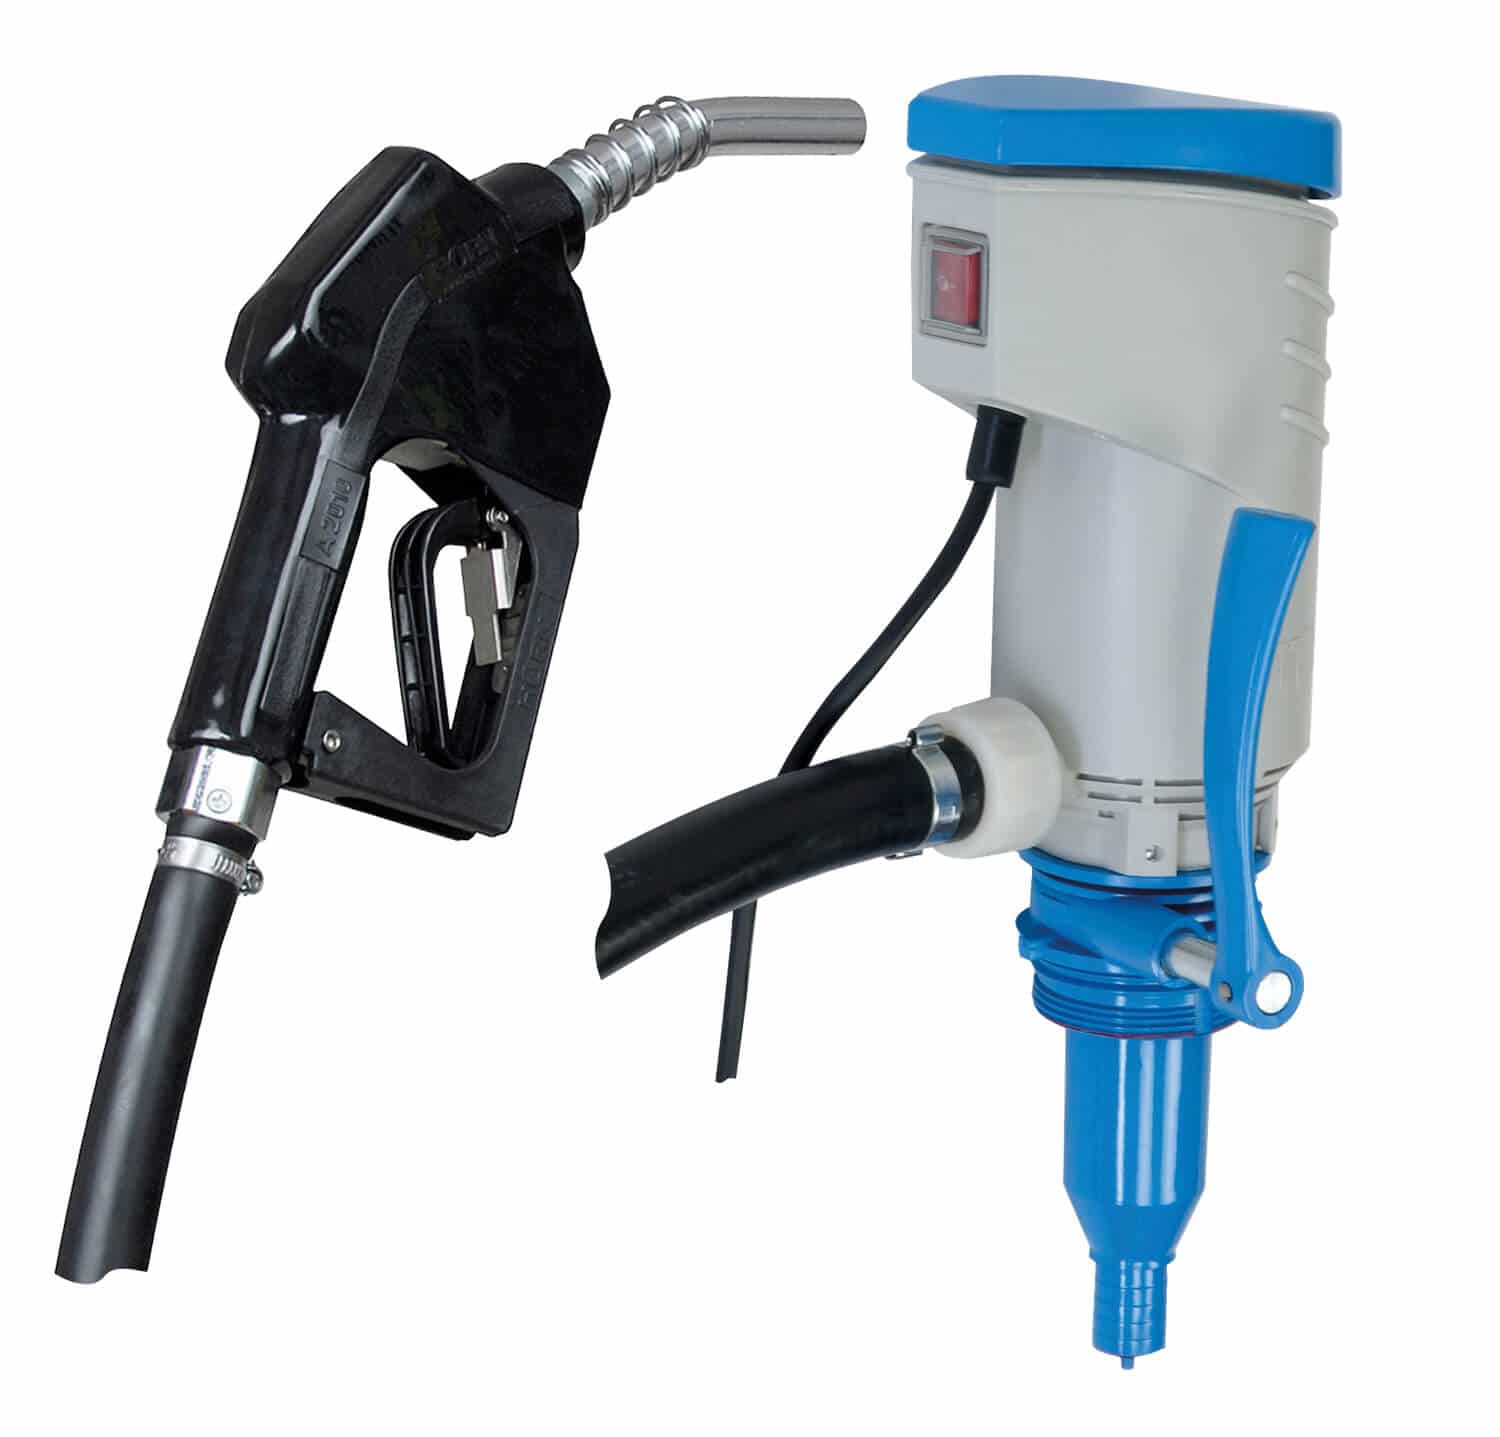 Elektrische Förderpumpe (12 V) mit Automatik-Zapfpistole für die Medien Diesel und Heizöl.